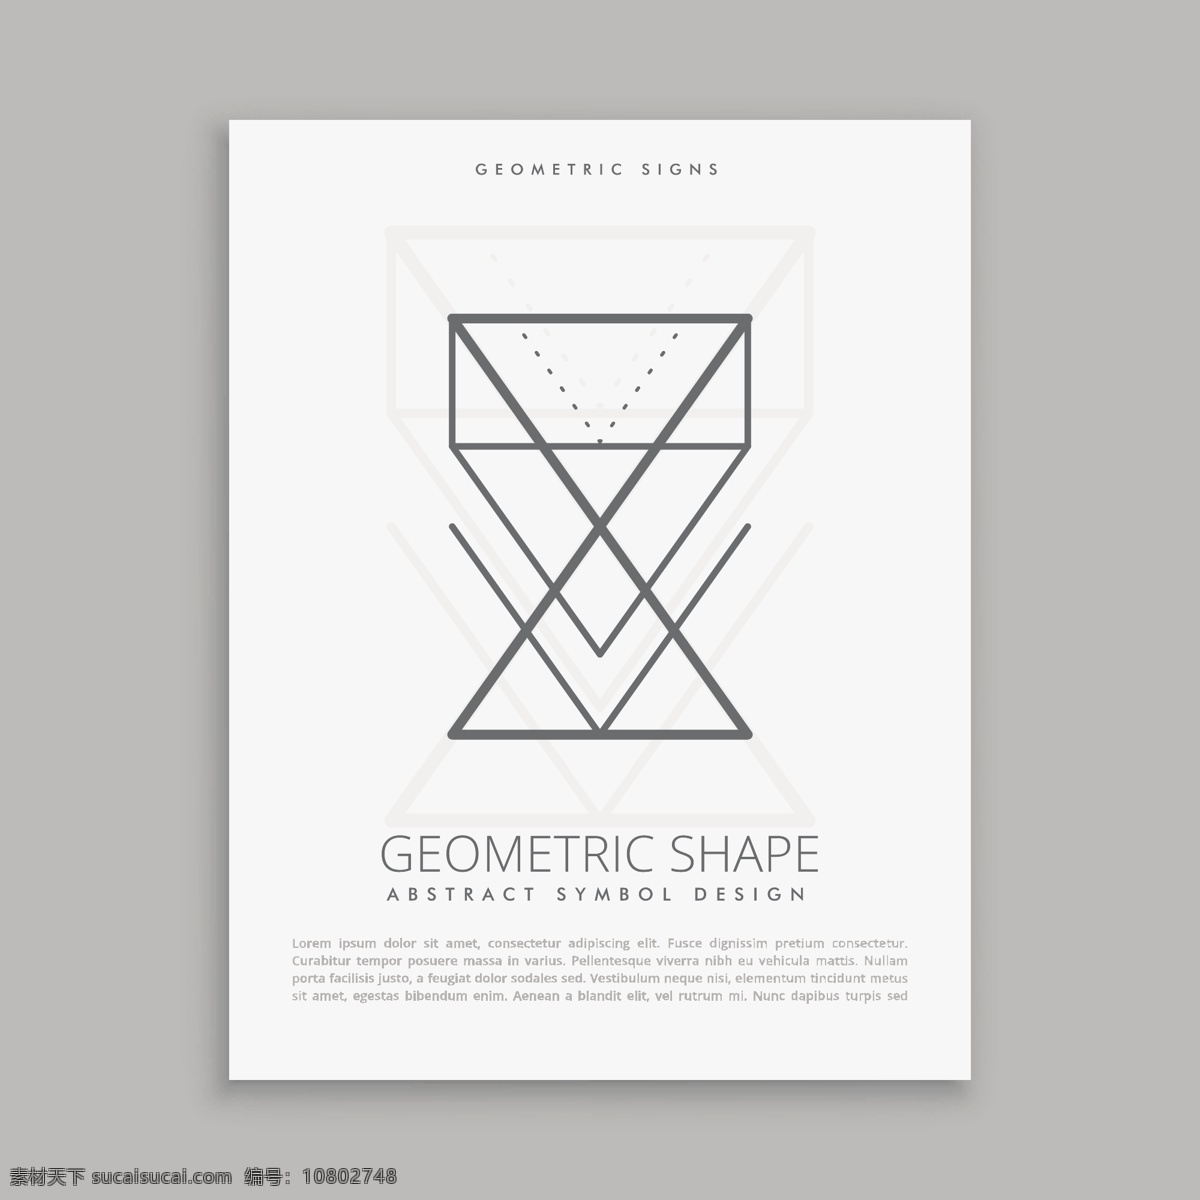 神圣 形状 海报 传单 抽象 卡片 几何 线条 宗教 符号 未来 元素 几何形态 精神 星象 抽象的形状 人物 哲学 白色